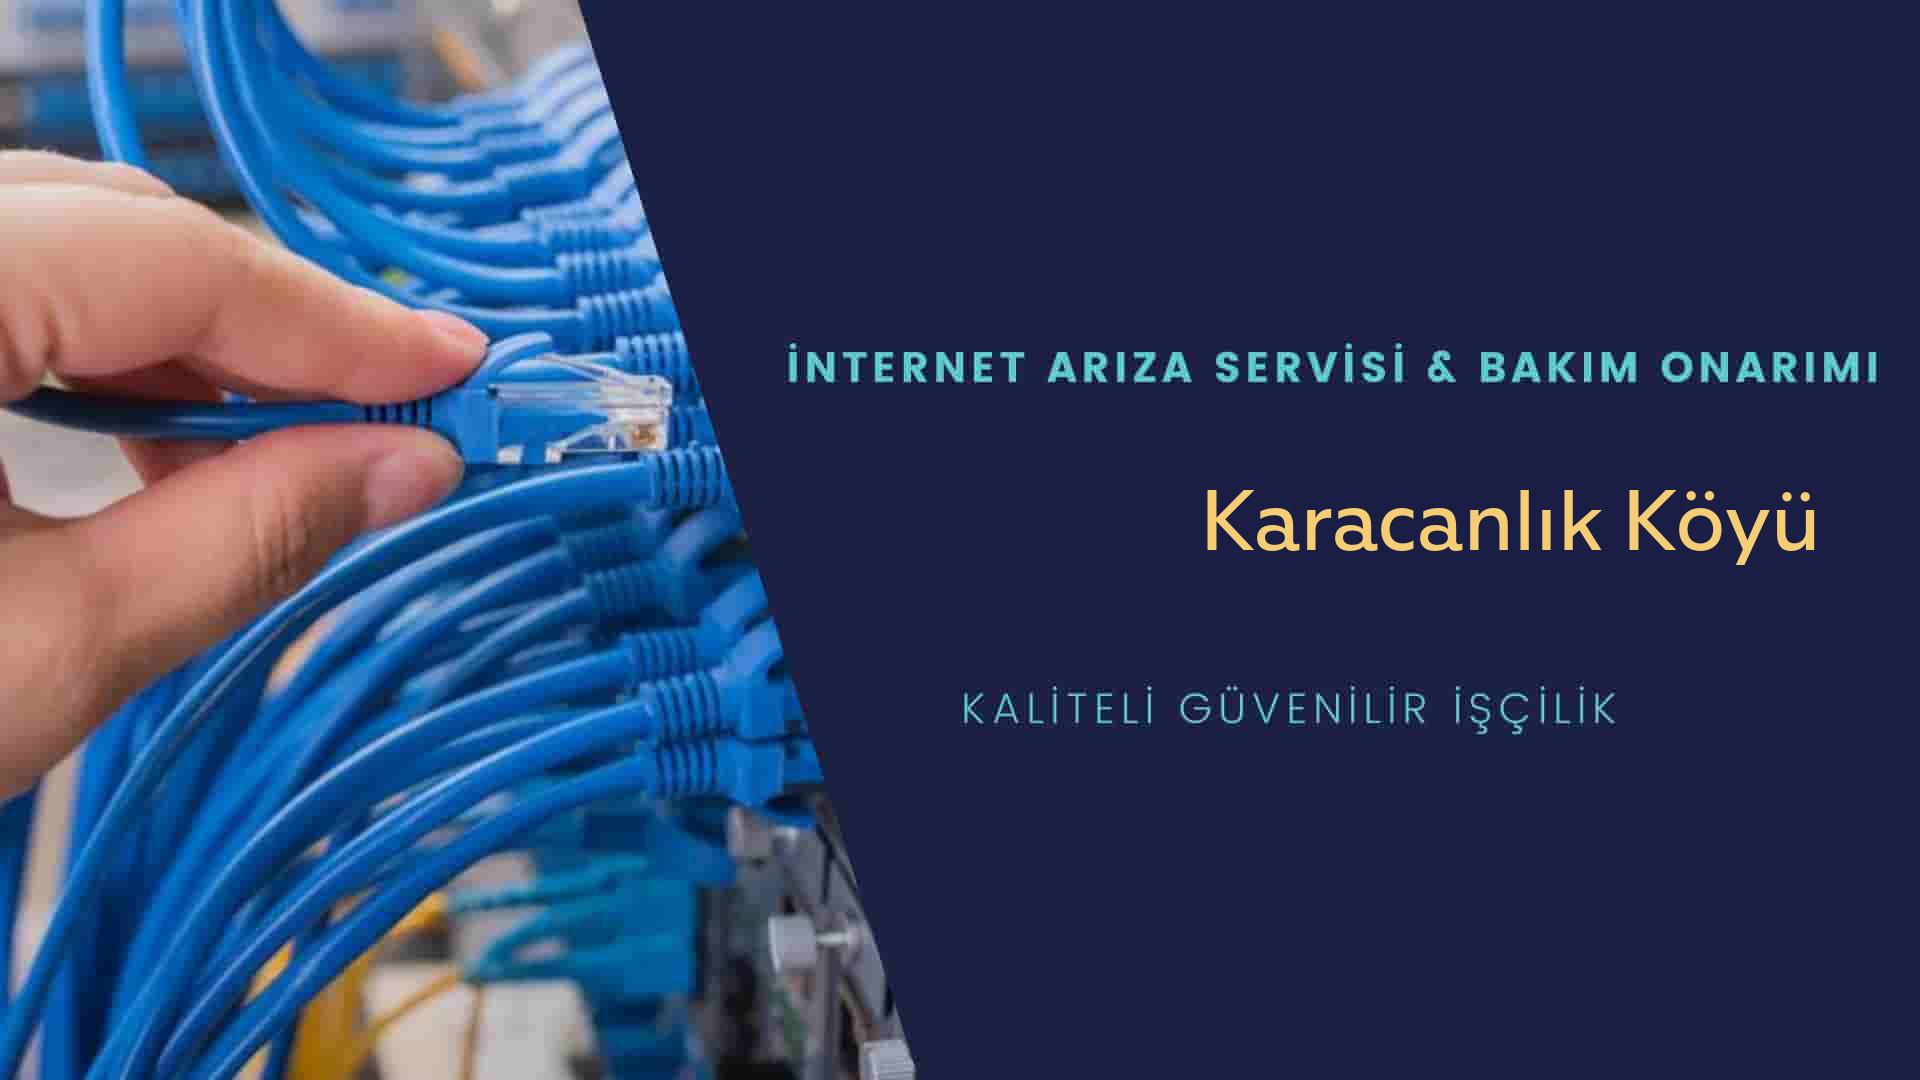 Karacanlık Köyü internet kablosu çekimi yapan yerler veya elektrikçiler mi? arıyorsunuz doğru yerdesiniz o zaman sizlere 7/24 yardımcı olacak profesyonel ustalarımız bir telefon kadar yakındır size.